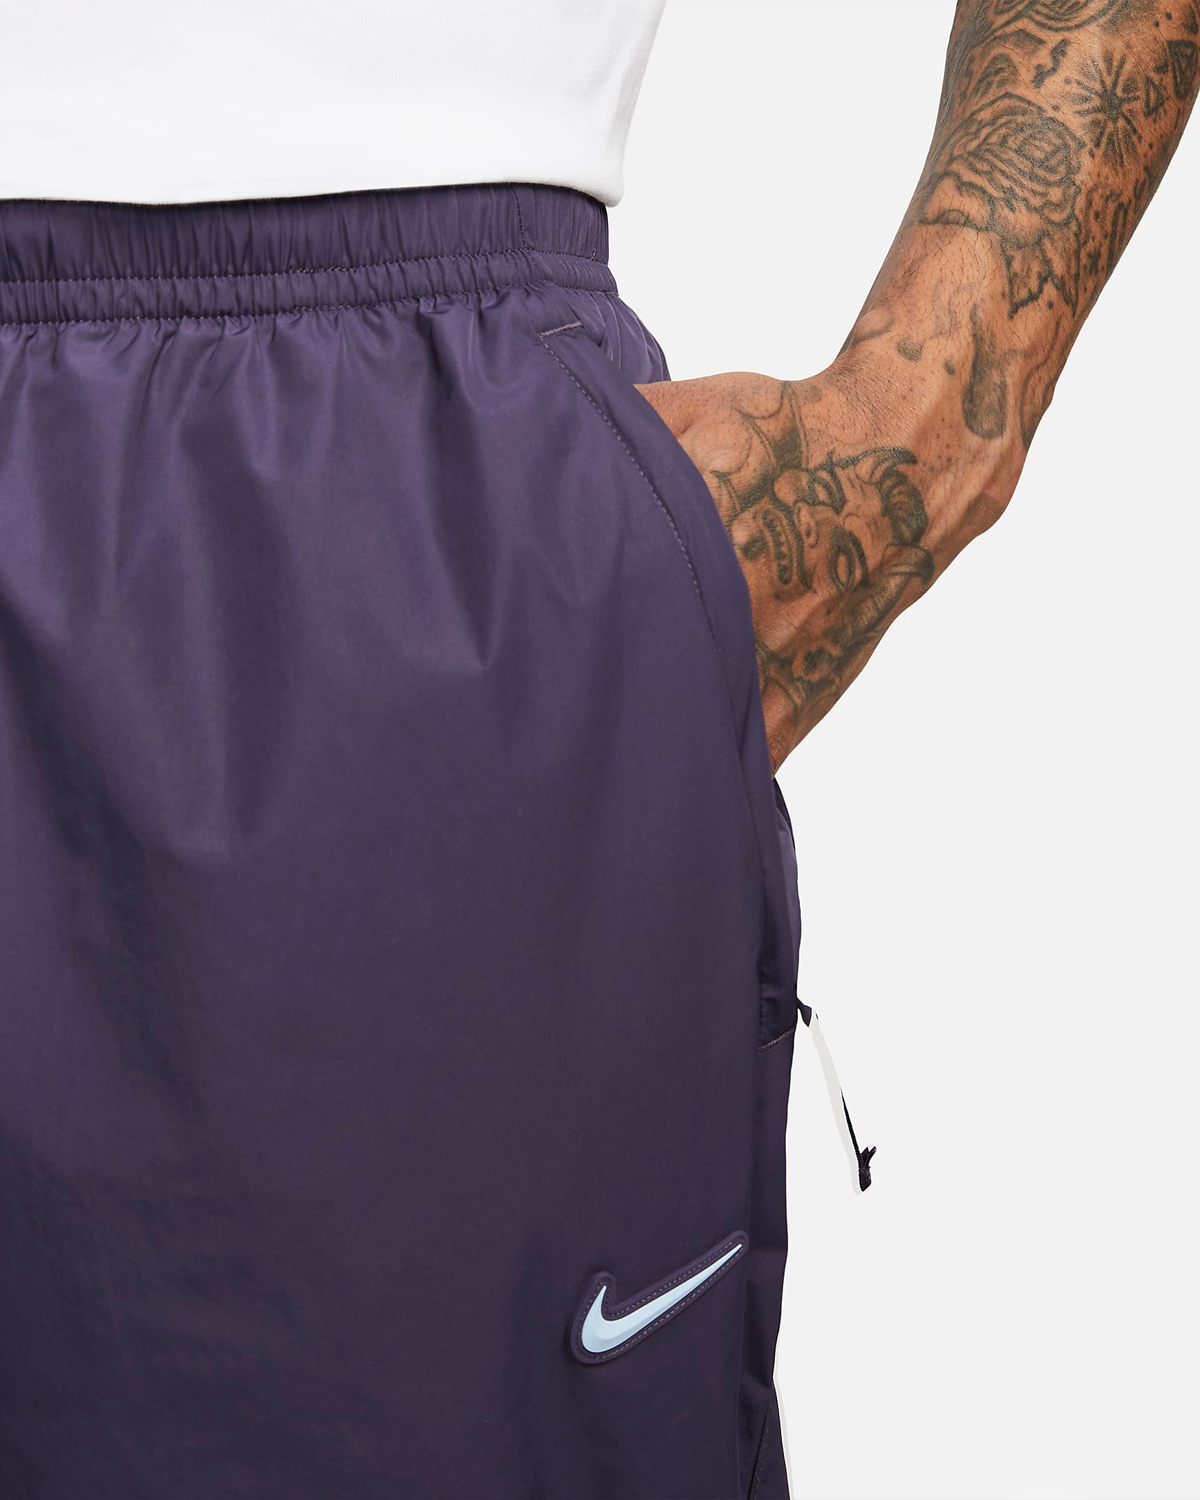 Drake-NOCTA-Nike-Track-Pants-Purple-2